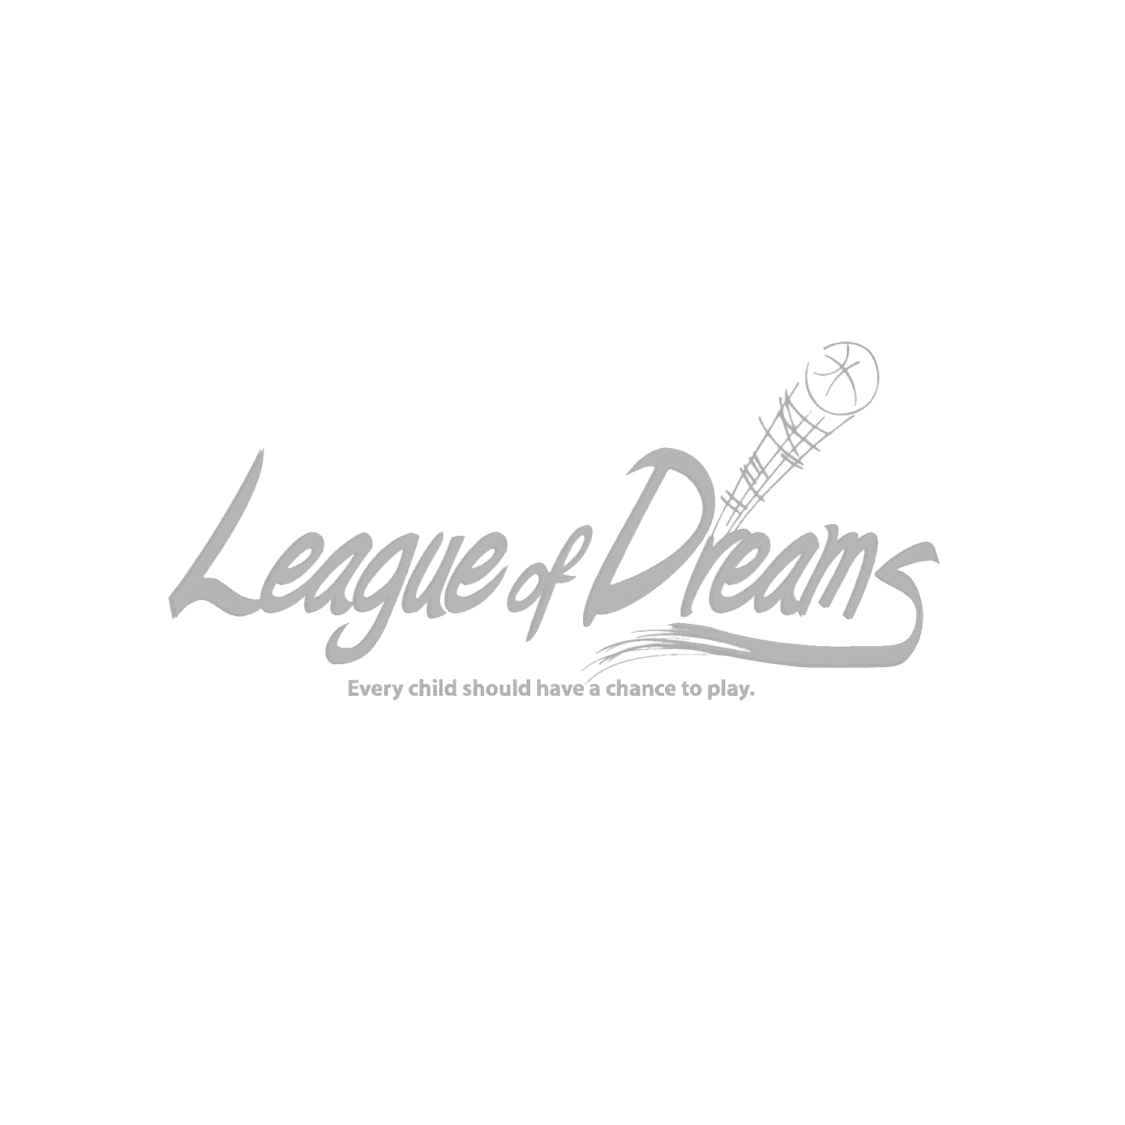 League of Dreams